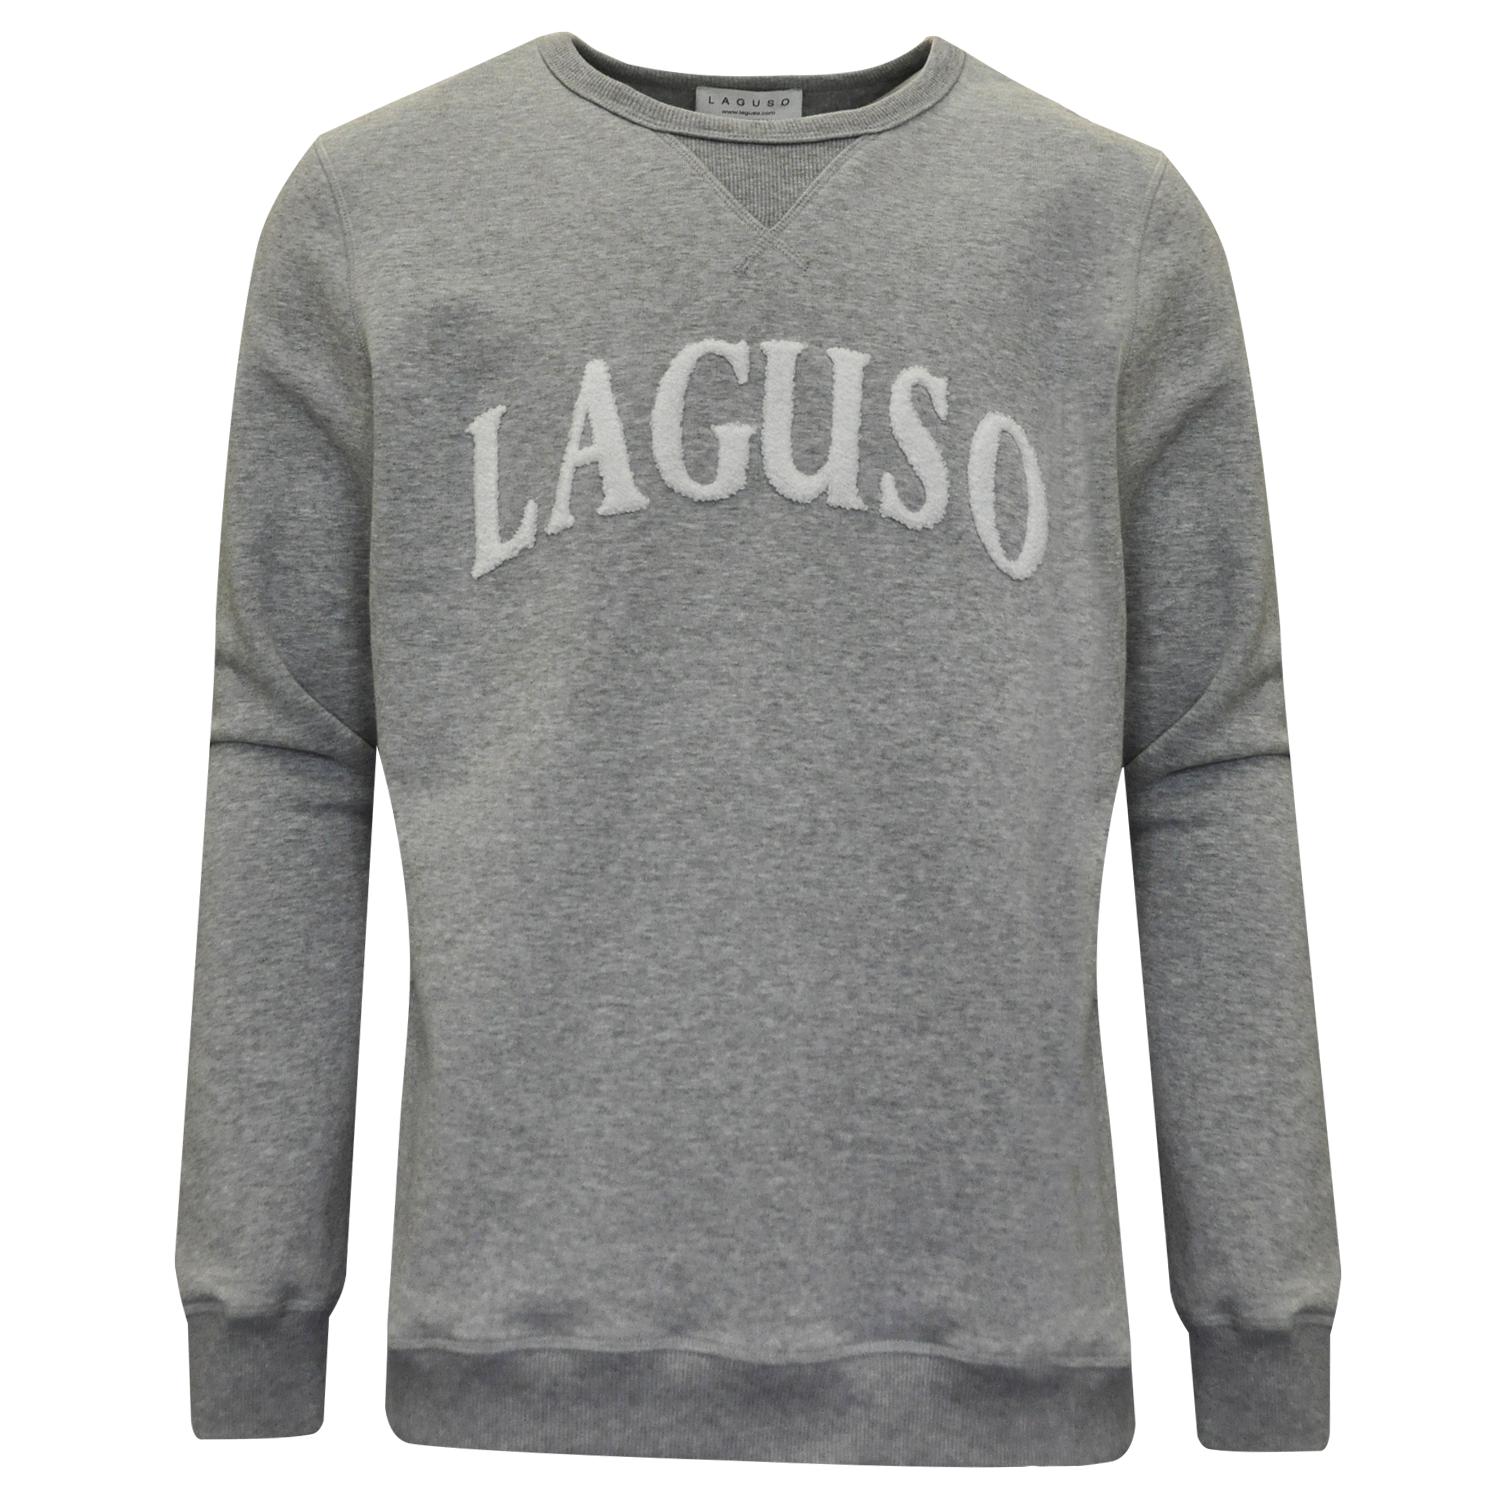 Sweatshirt Flo Flock Grey von Laguso